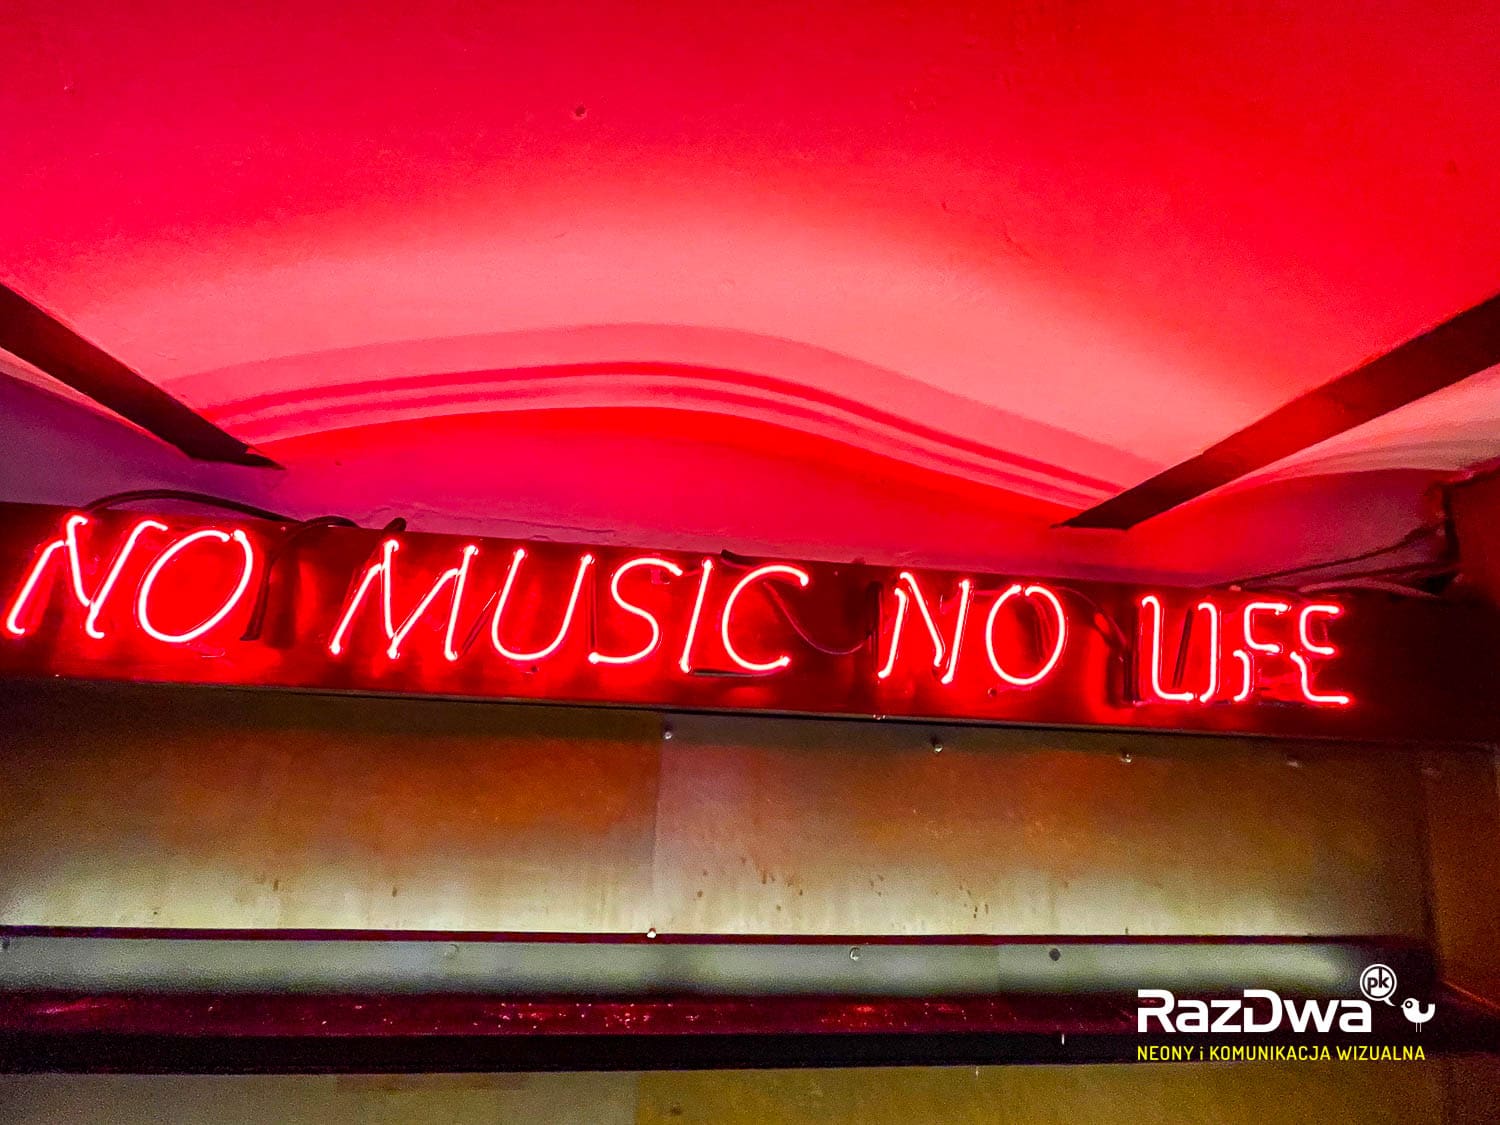 neon-pub-brama-zabrze-no-music-no-life-06